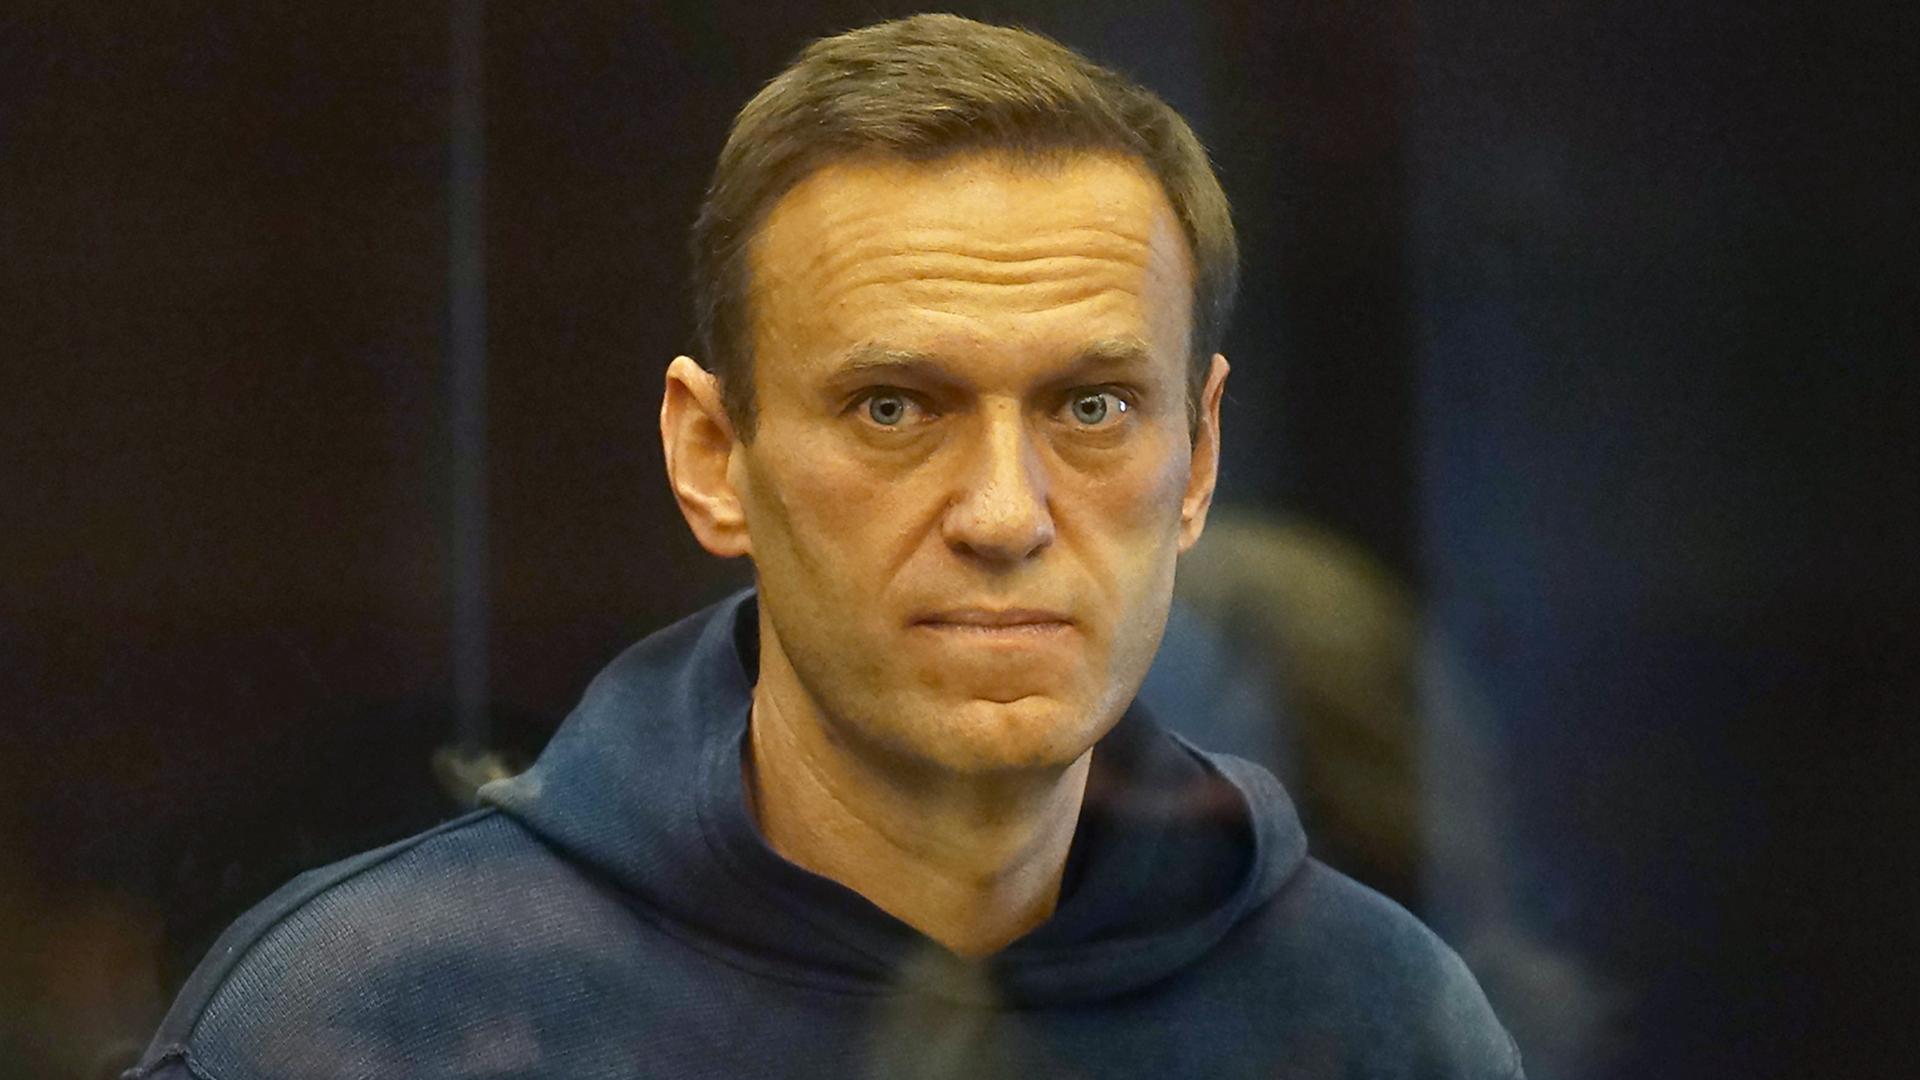 Ein Foto von Alexej Nawalny. Er trägt einen blauen Kaputzen-Pullover. Und er guckt nachdenklich.